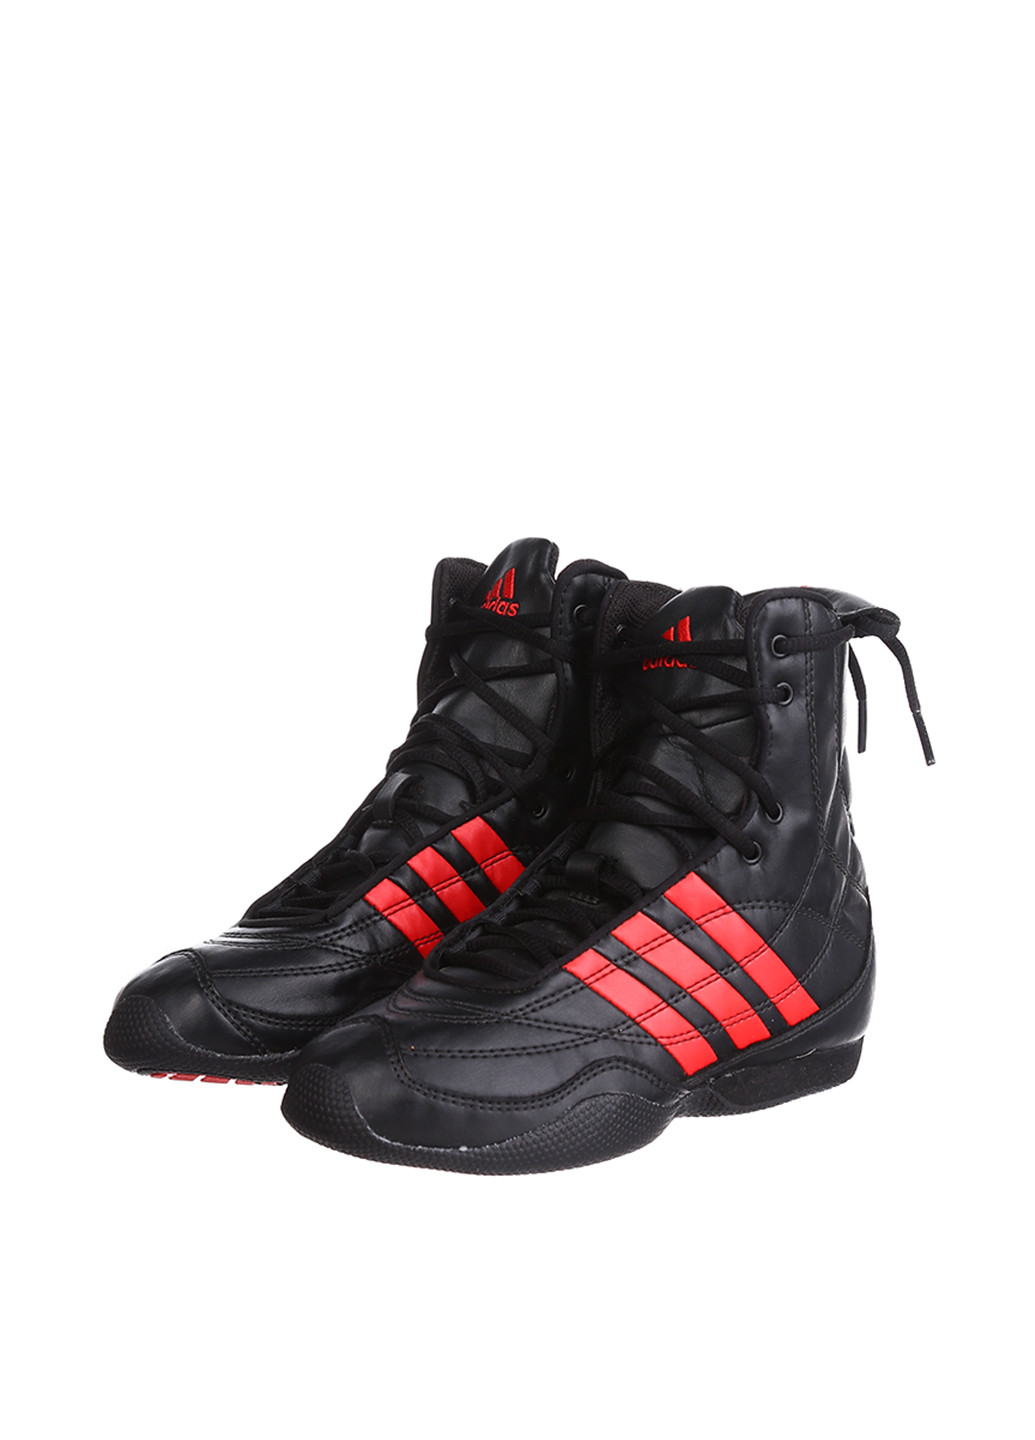 Черные всесезон кроссовки adidas